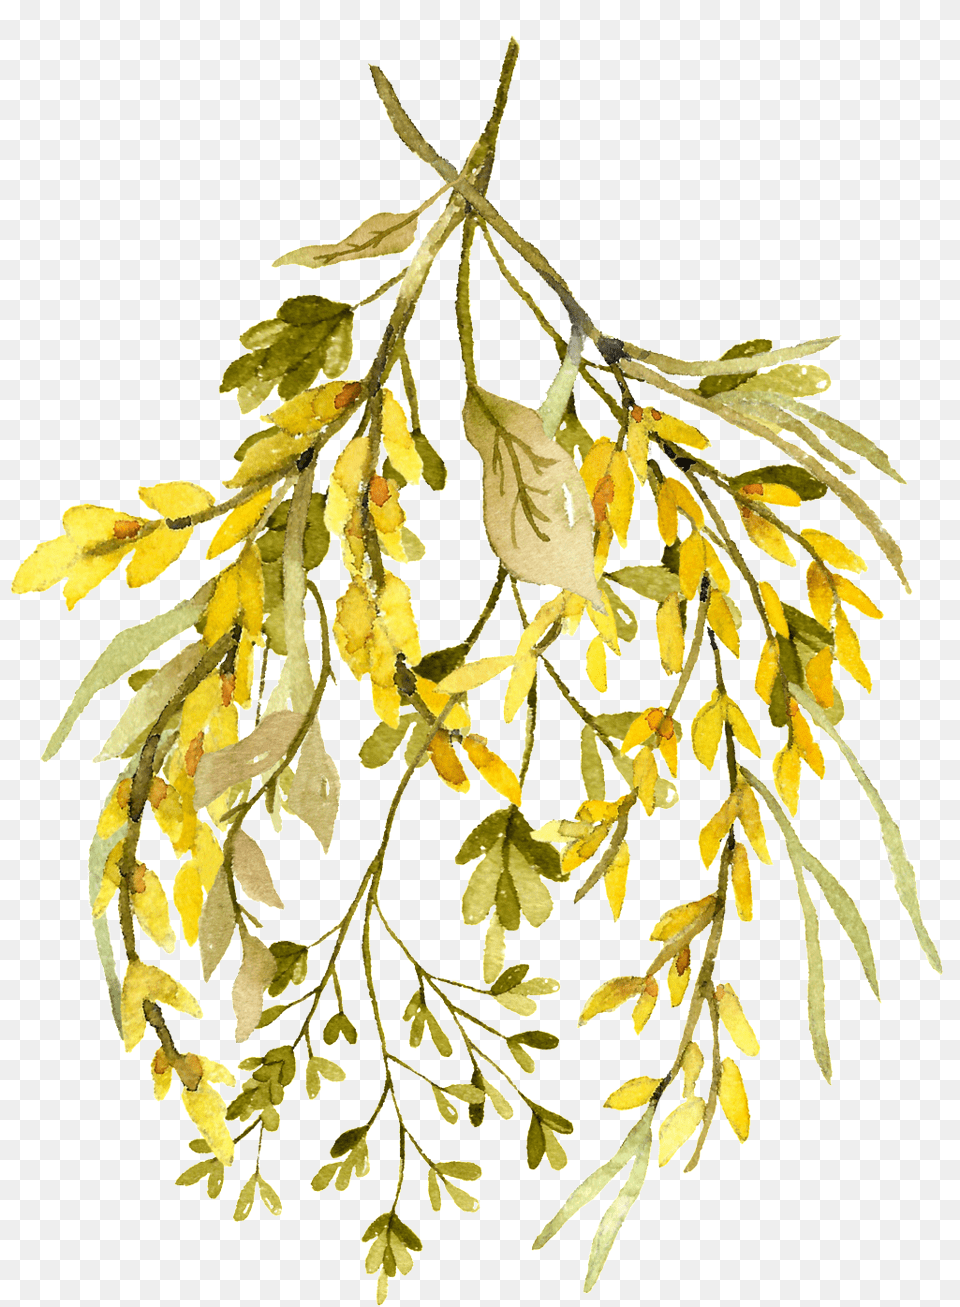 Watercolor Leaf Rustikaler Wildblumewatercolor Der Save The Date Karte, Herbal, Herbs, Plant, Seaweed Free Png